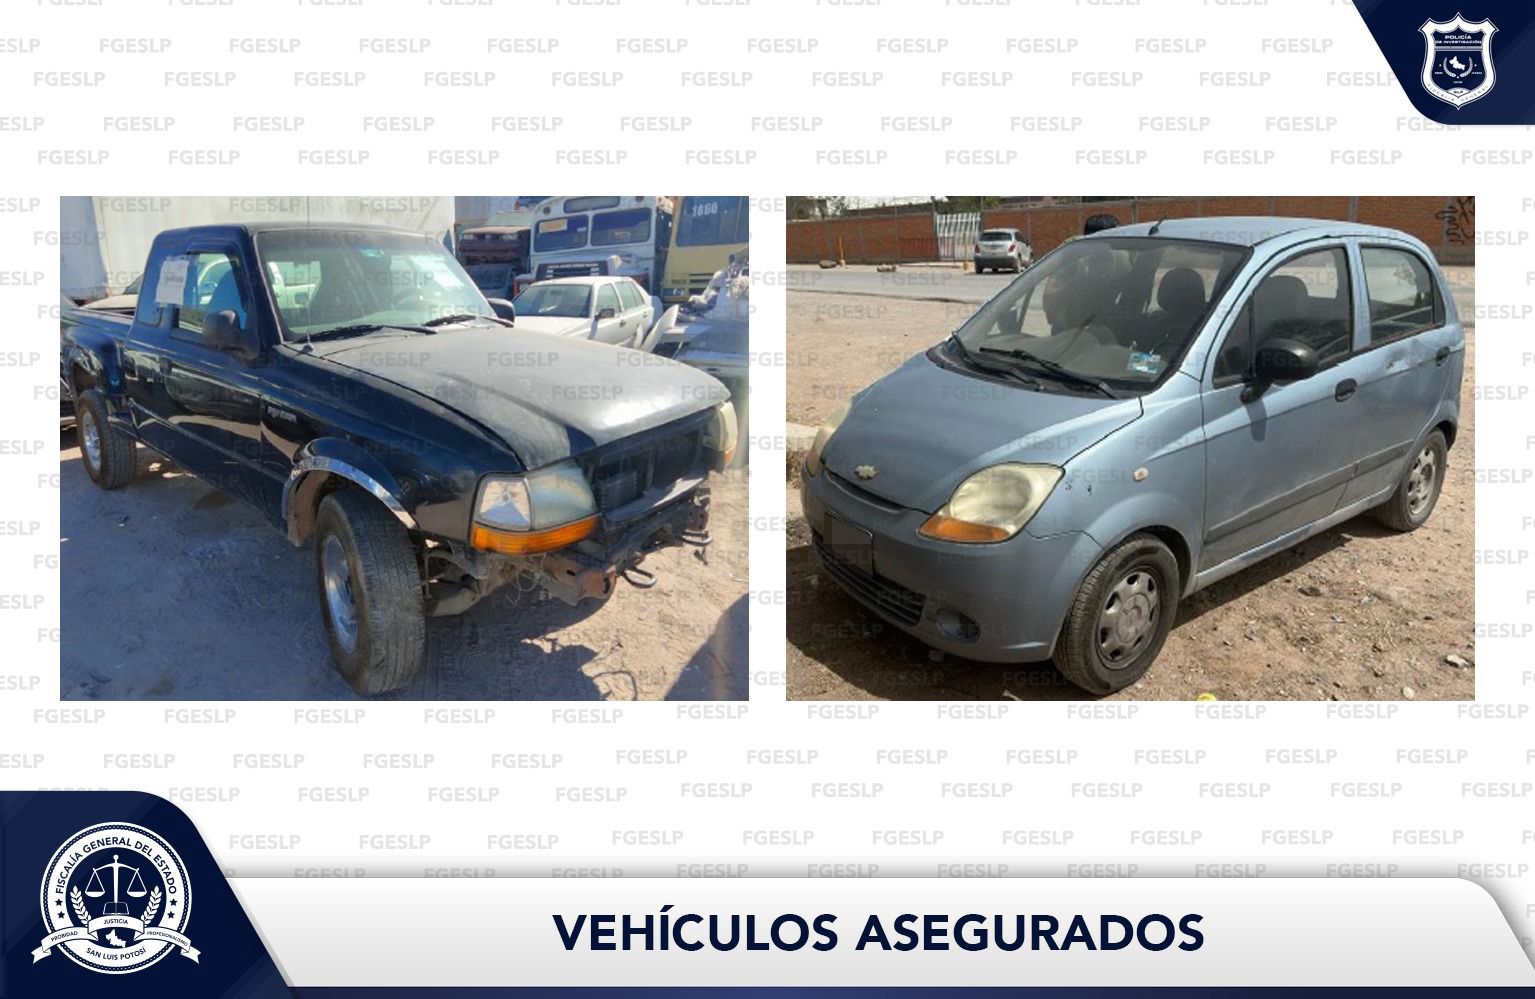 Fiscalía de San Luis Potosí a través de la Policía de Investigación (PDI) efectuó el aseguramiento de dos vehículos en la Entidad potosina.